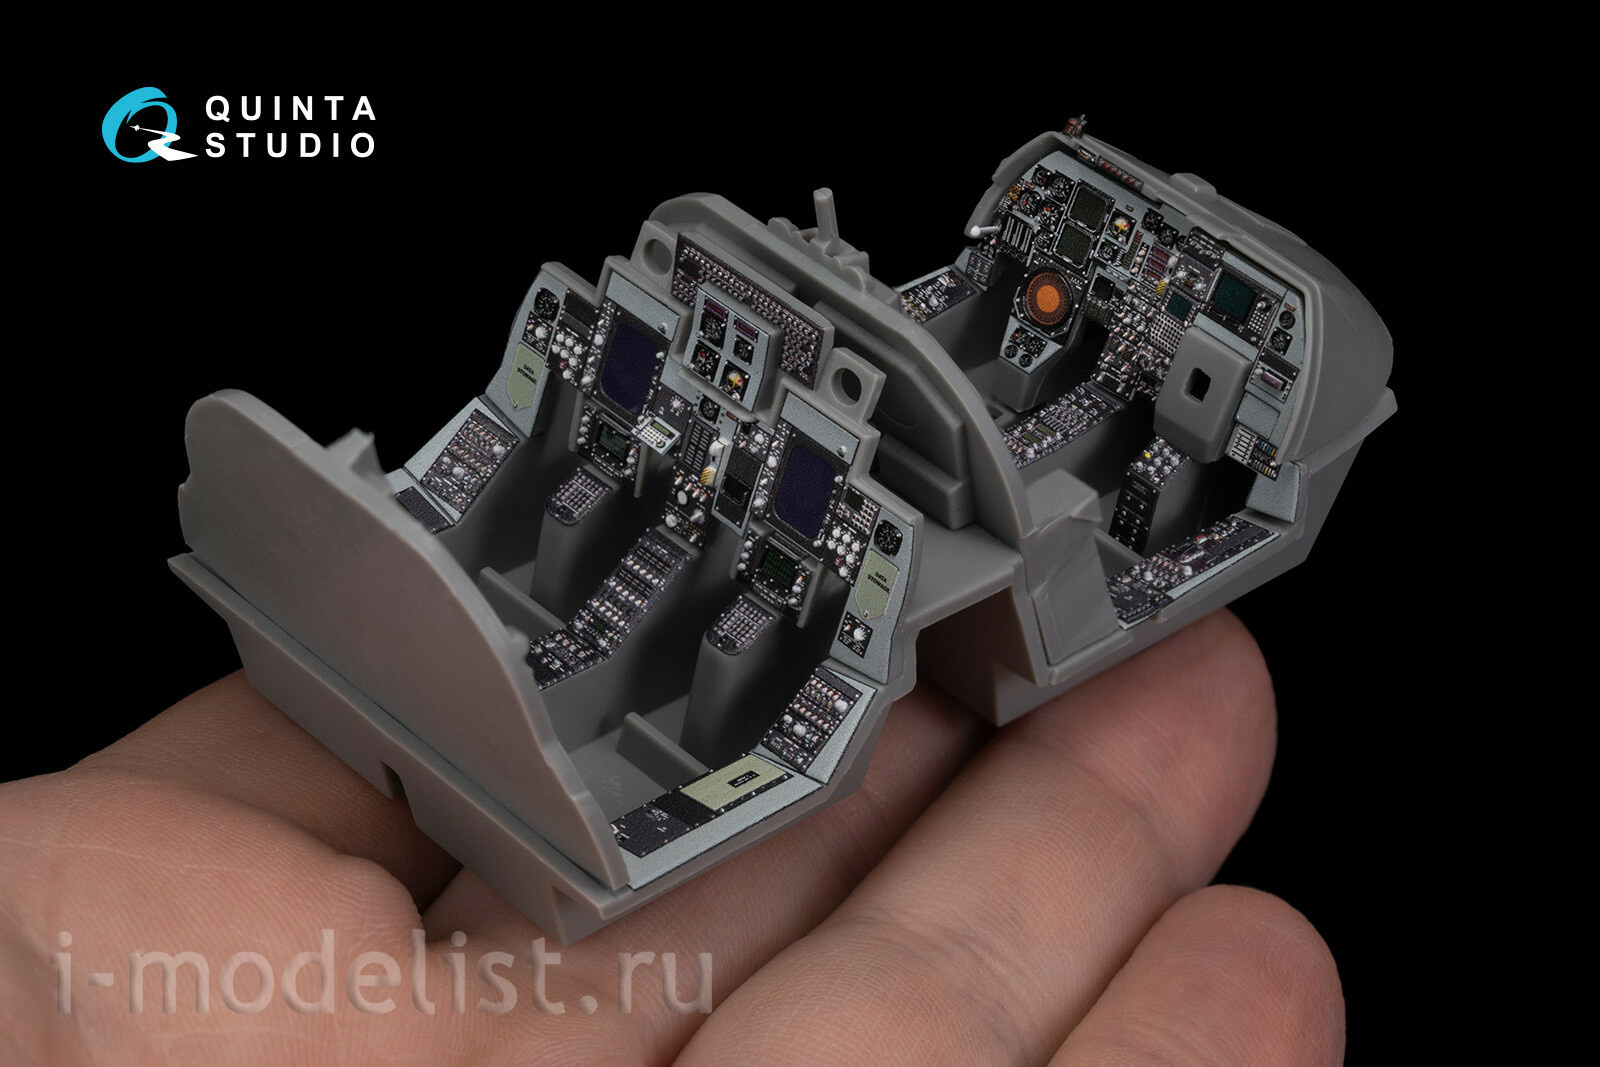 QDS-48270 Quinta Studio 1/48 3D Декаль интерьера кабины EA-6B Prowler (ICAP II) (Kinetic) (Малая версия)